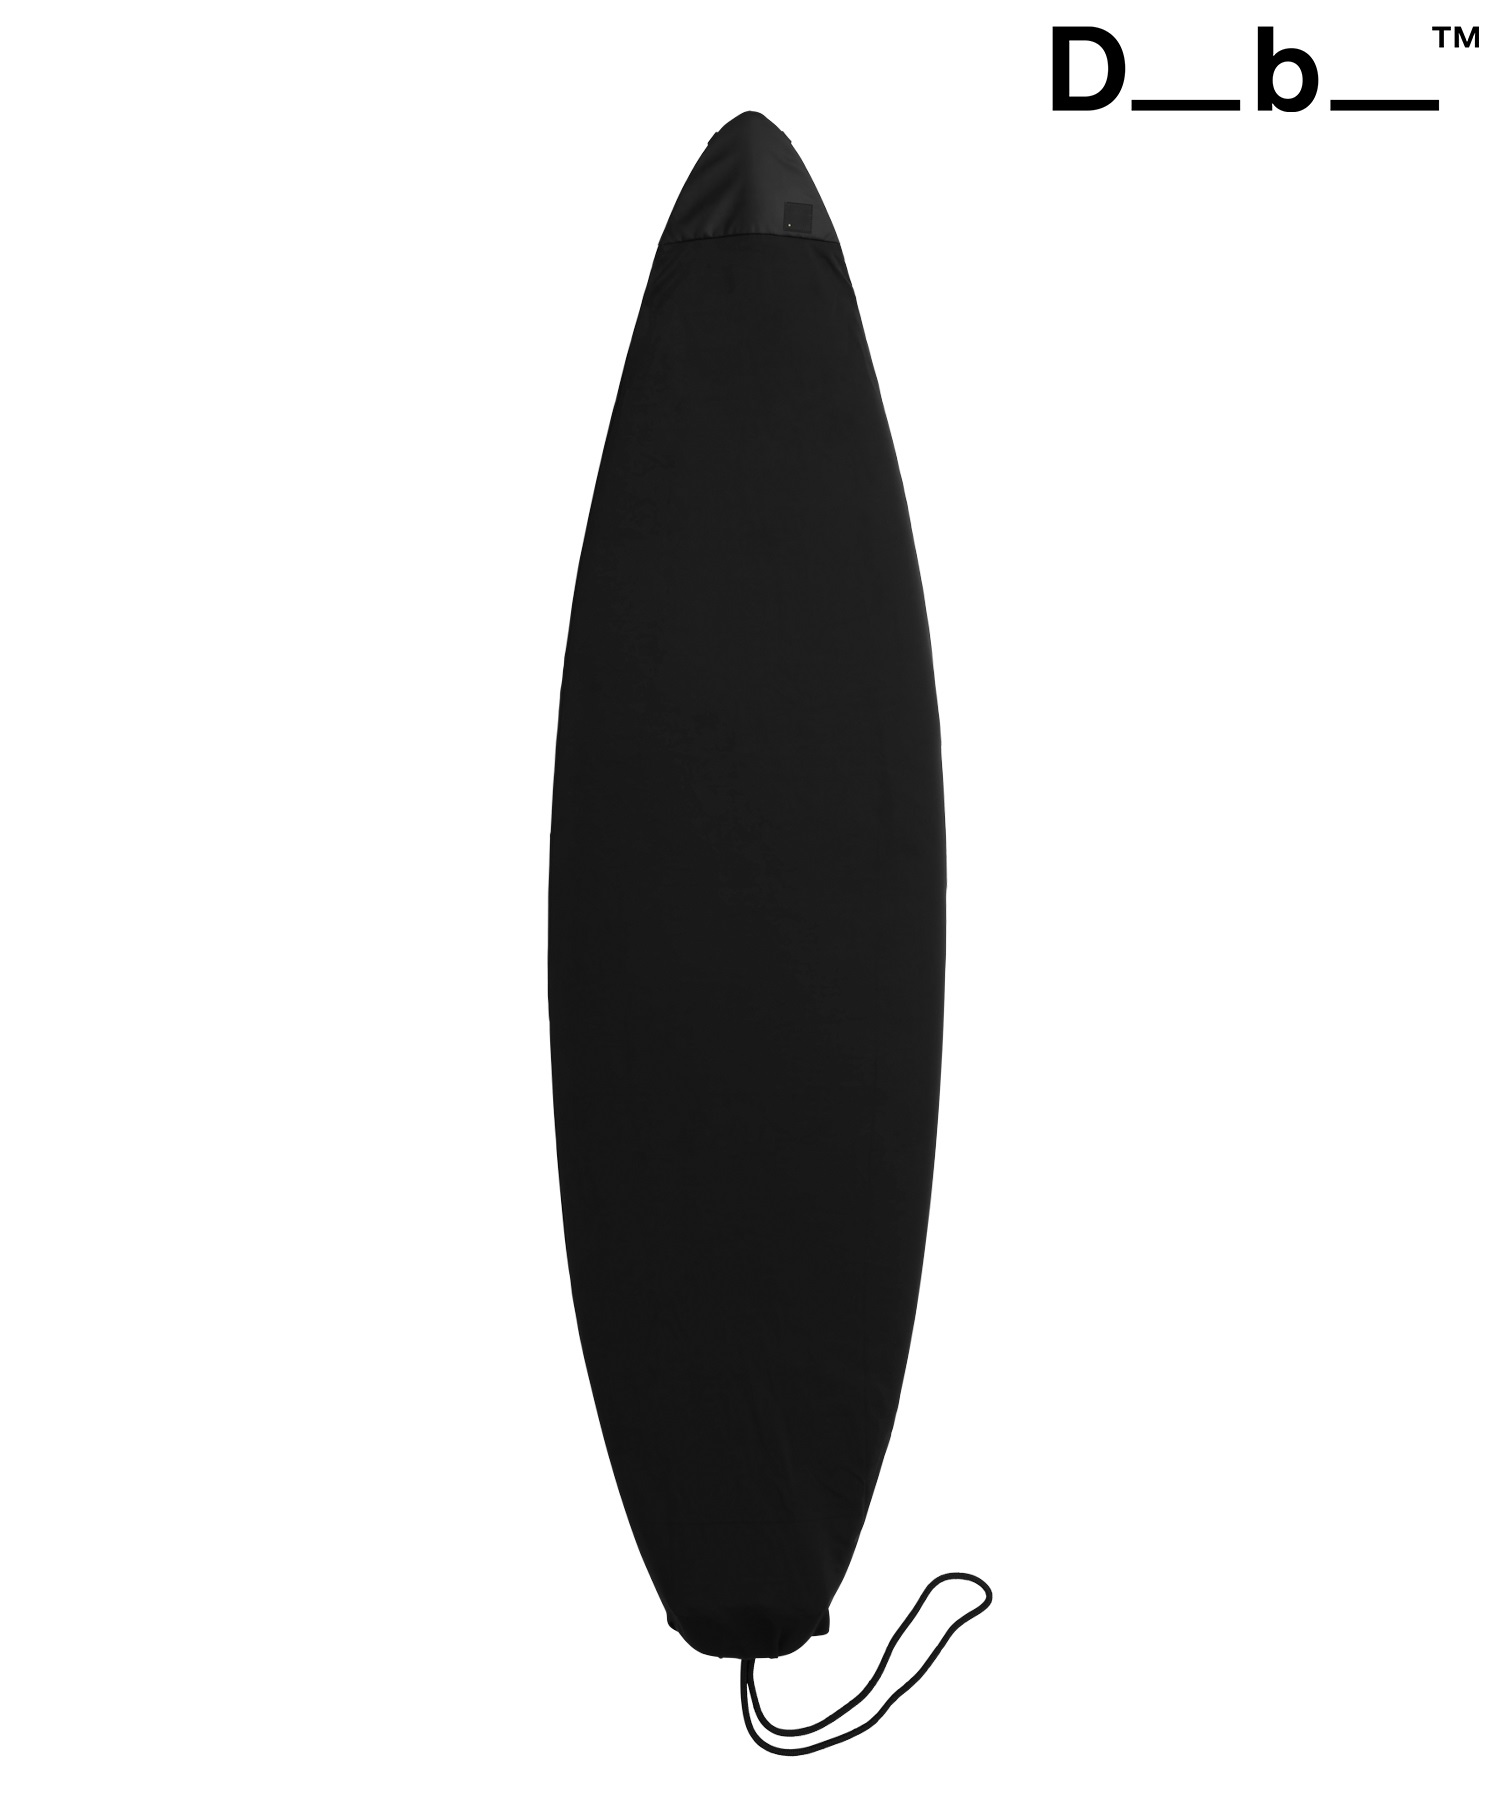 DB ディービー SURF SOCK STAB LTD ボードケース ニットケース サーフィン ムラサキスポーツ(STBLT-5.8)